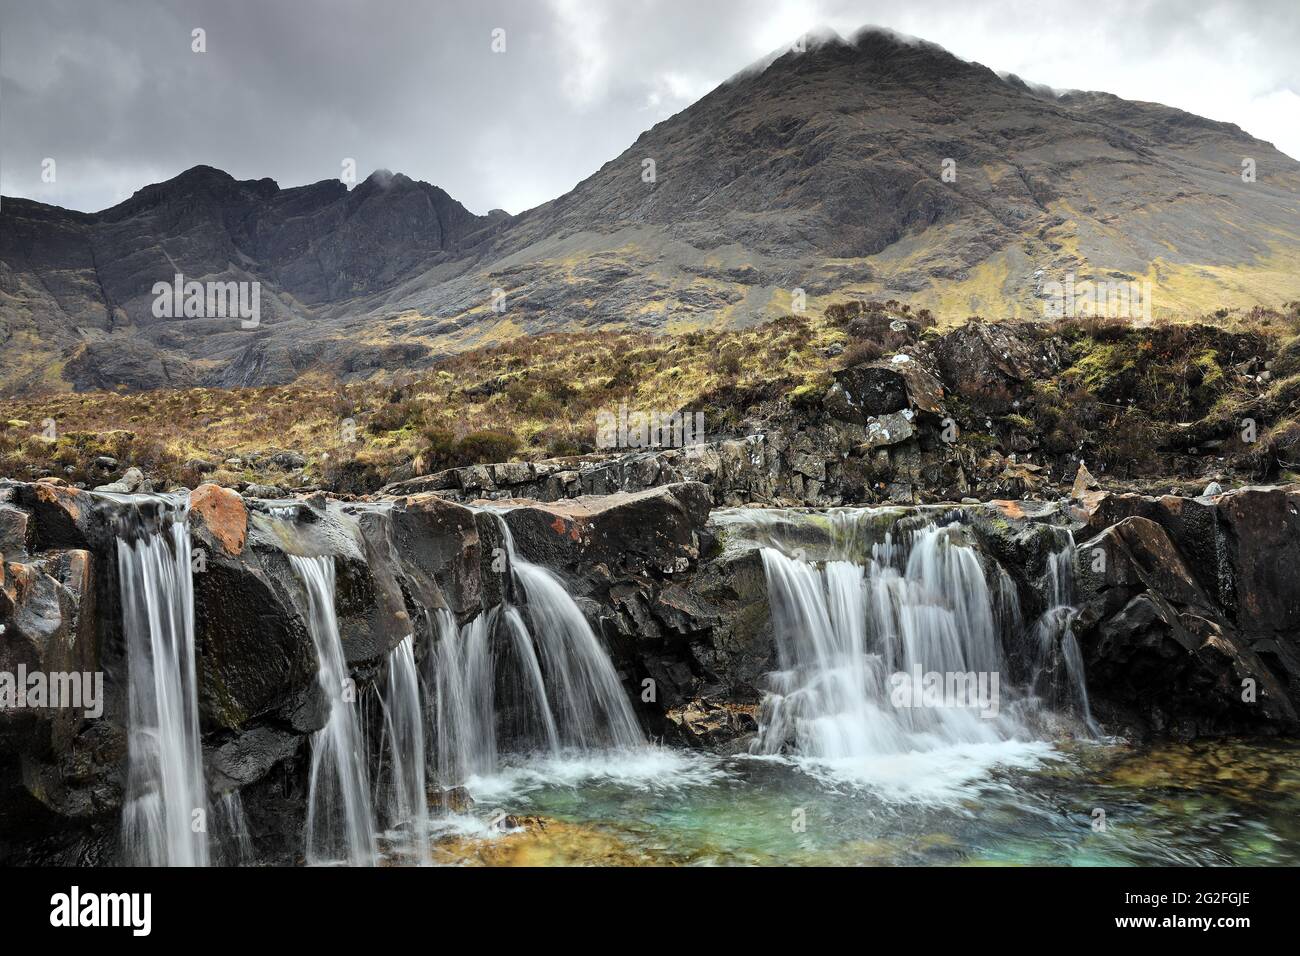 Fairy pools, Glen fragile, île de Skye, Écosse, Royaume-Uni Banque D'Images